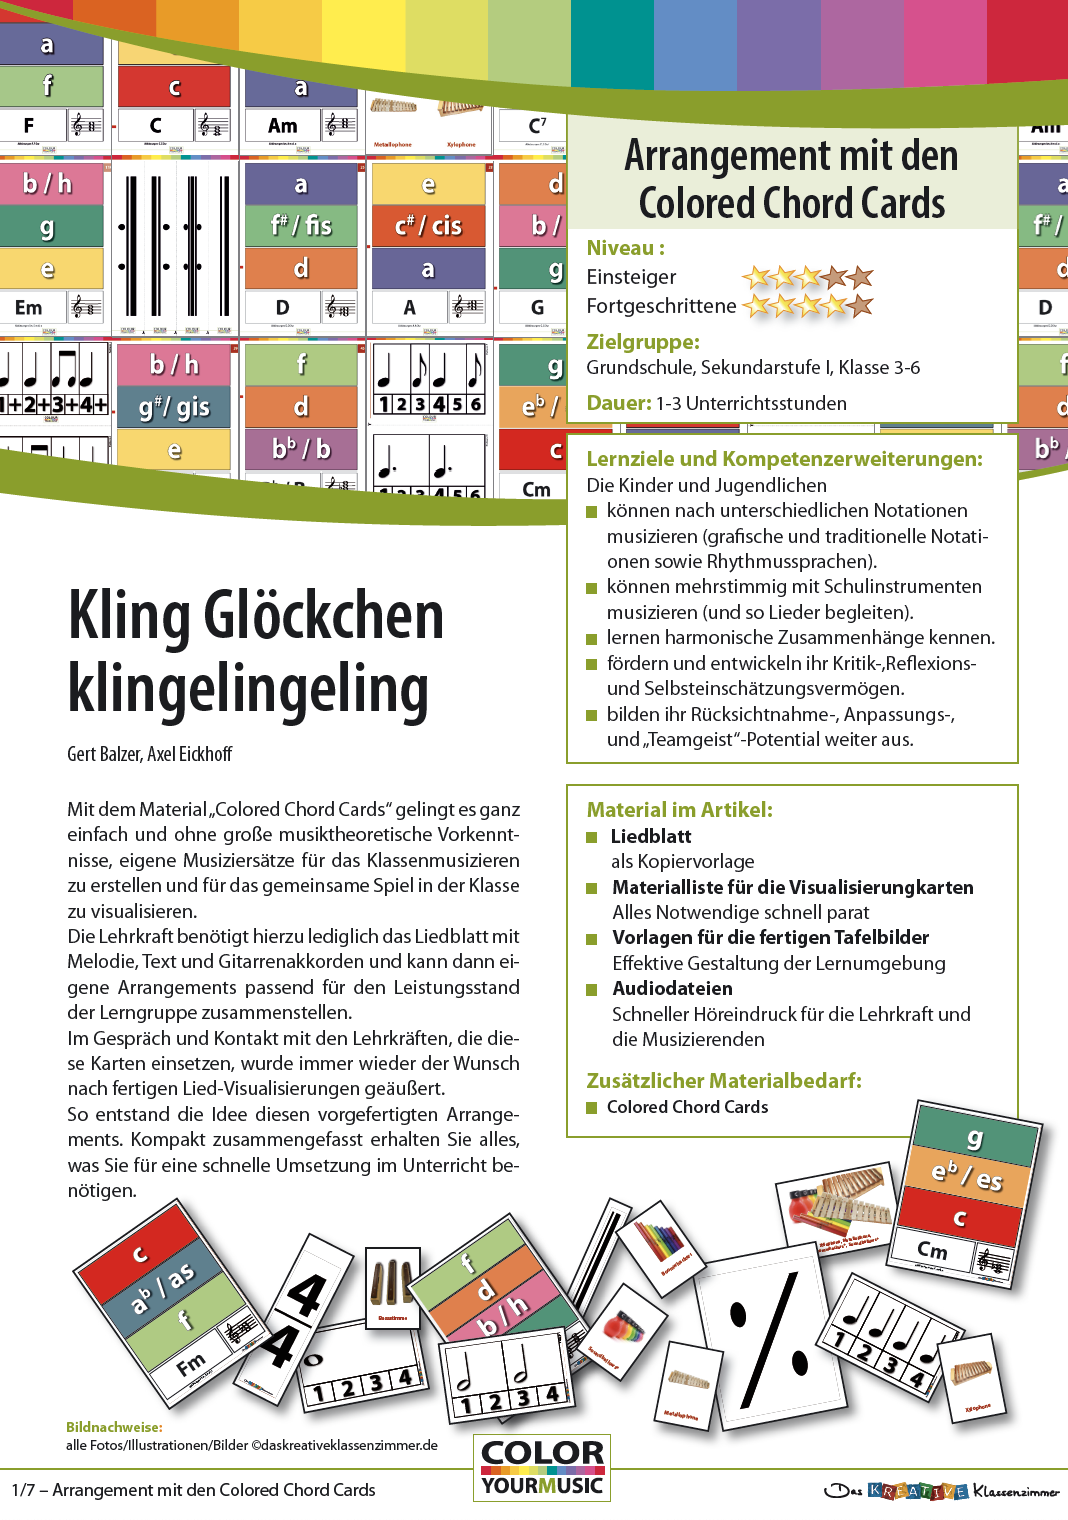 Kling Glöckchen, klingelingeling - Colored Chord Cards